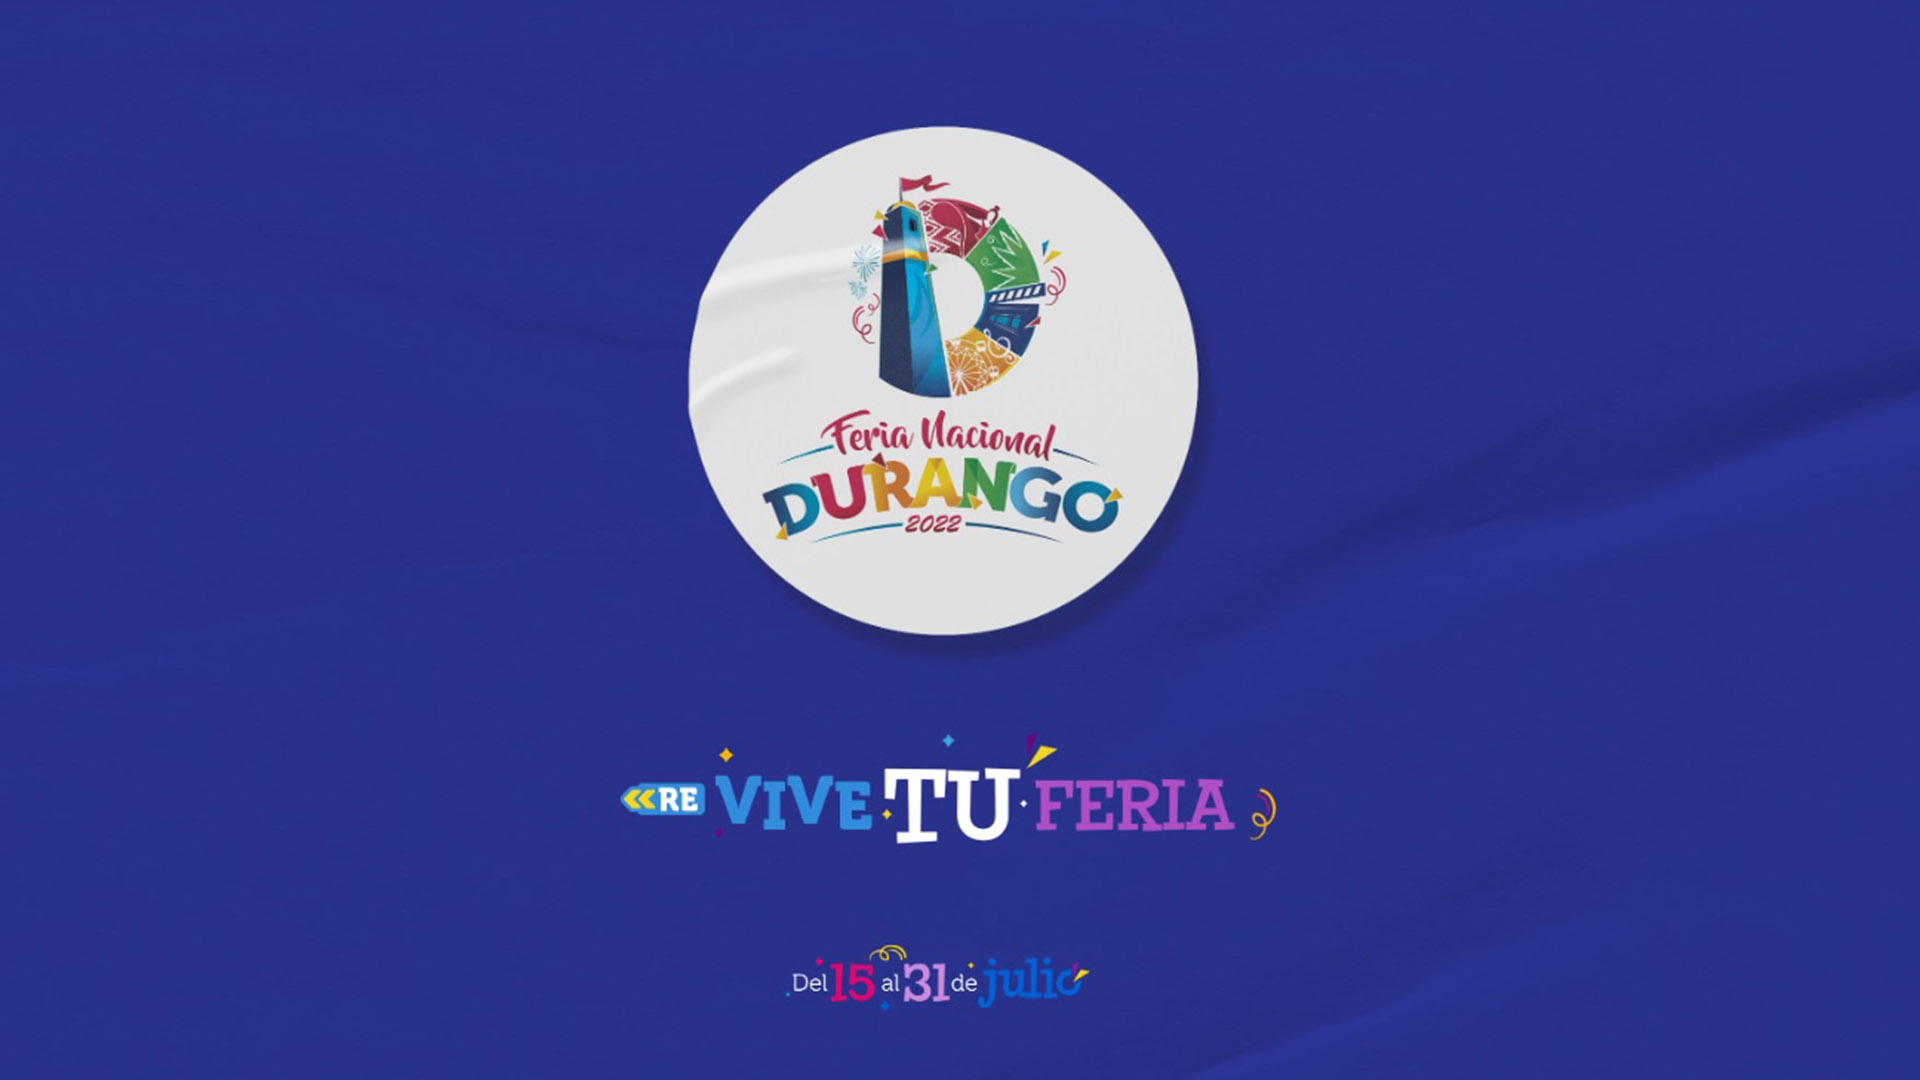 Durango está listo para su tradicional Feria Nacional